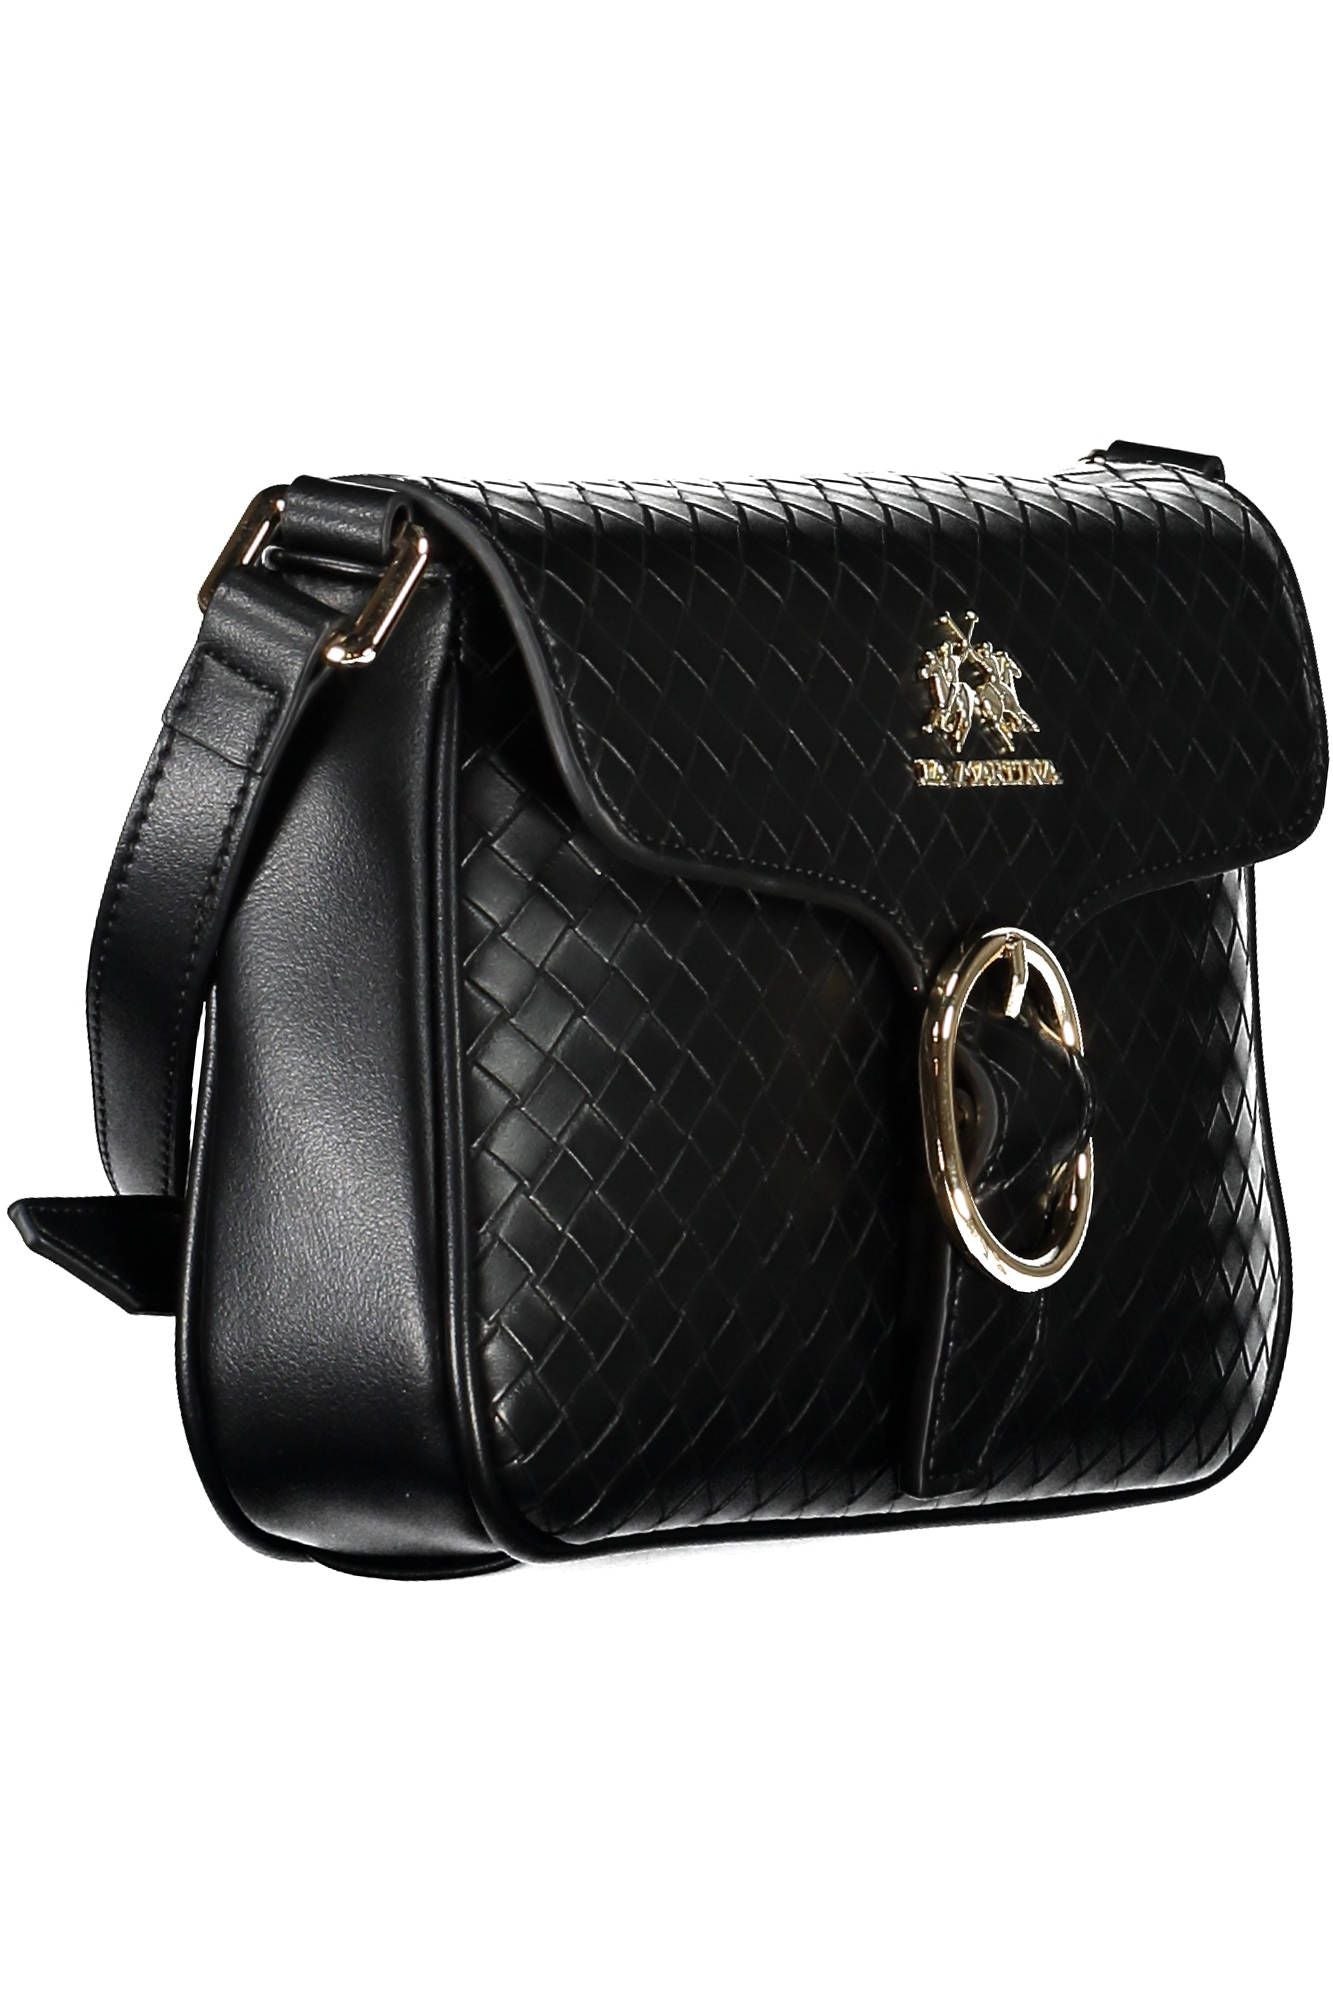 La Martina Elegant Black Shoulder Bag with Contrasting Details